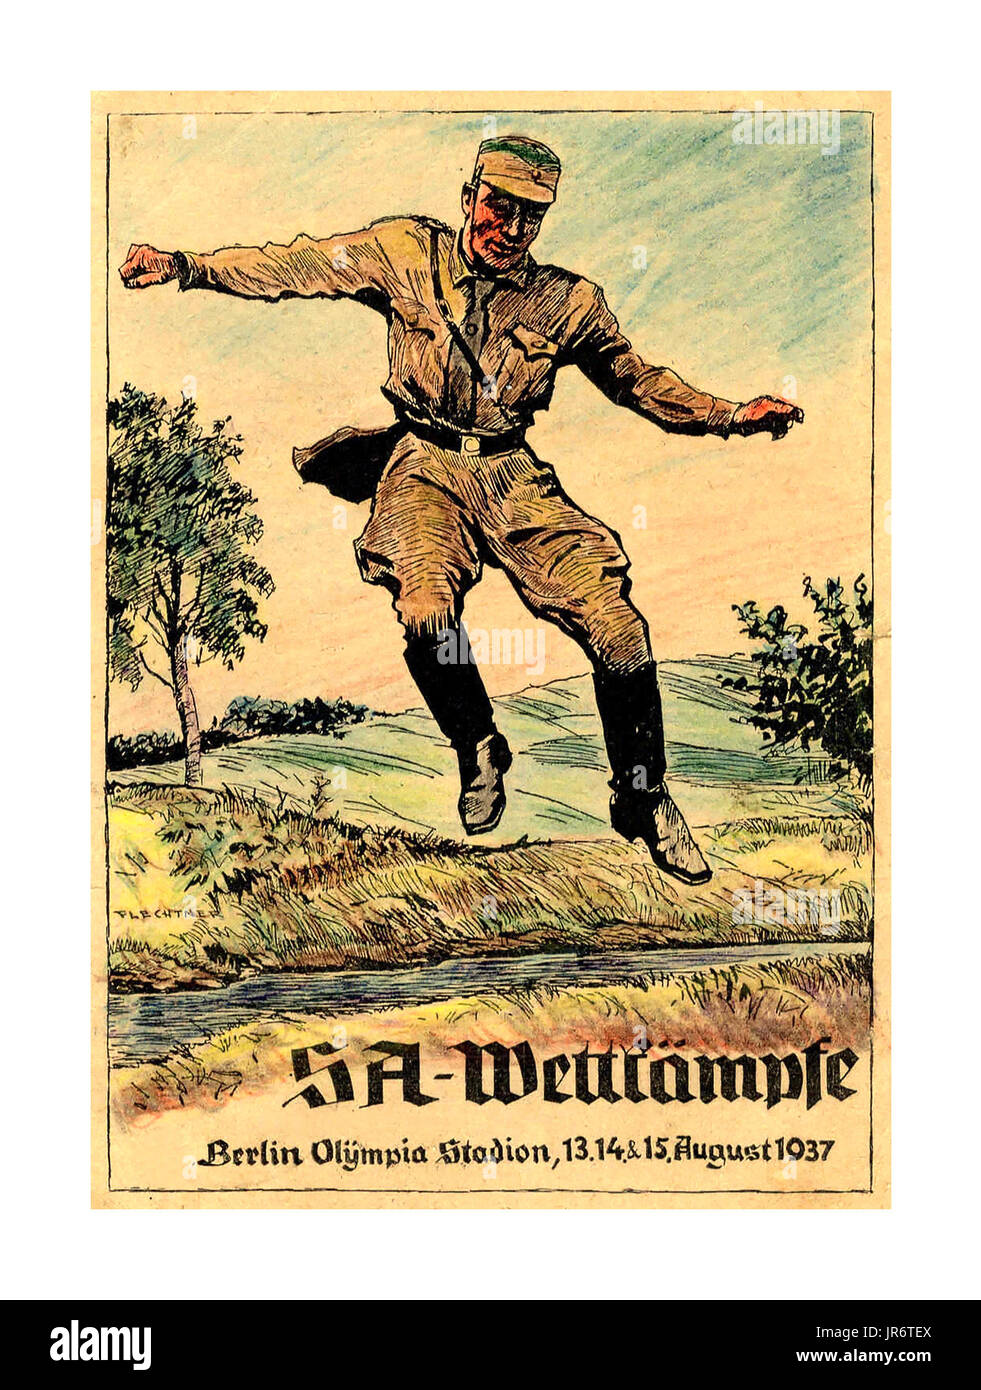 Vintage WW2 carte postale de propagande pour les Jeux Olympiques d'août 1937 SA Wettkämpfe, Berlin, Olympia Stadion, 13.14. et 15. Août 1937 Allemagne Banque D'Images